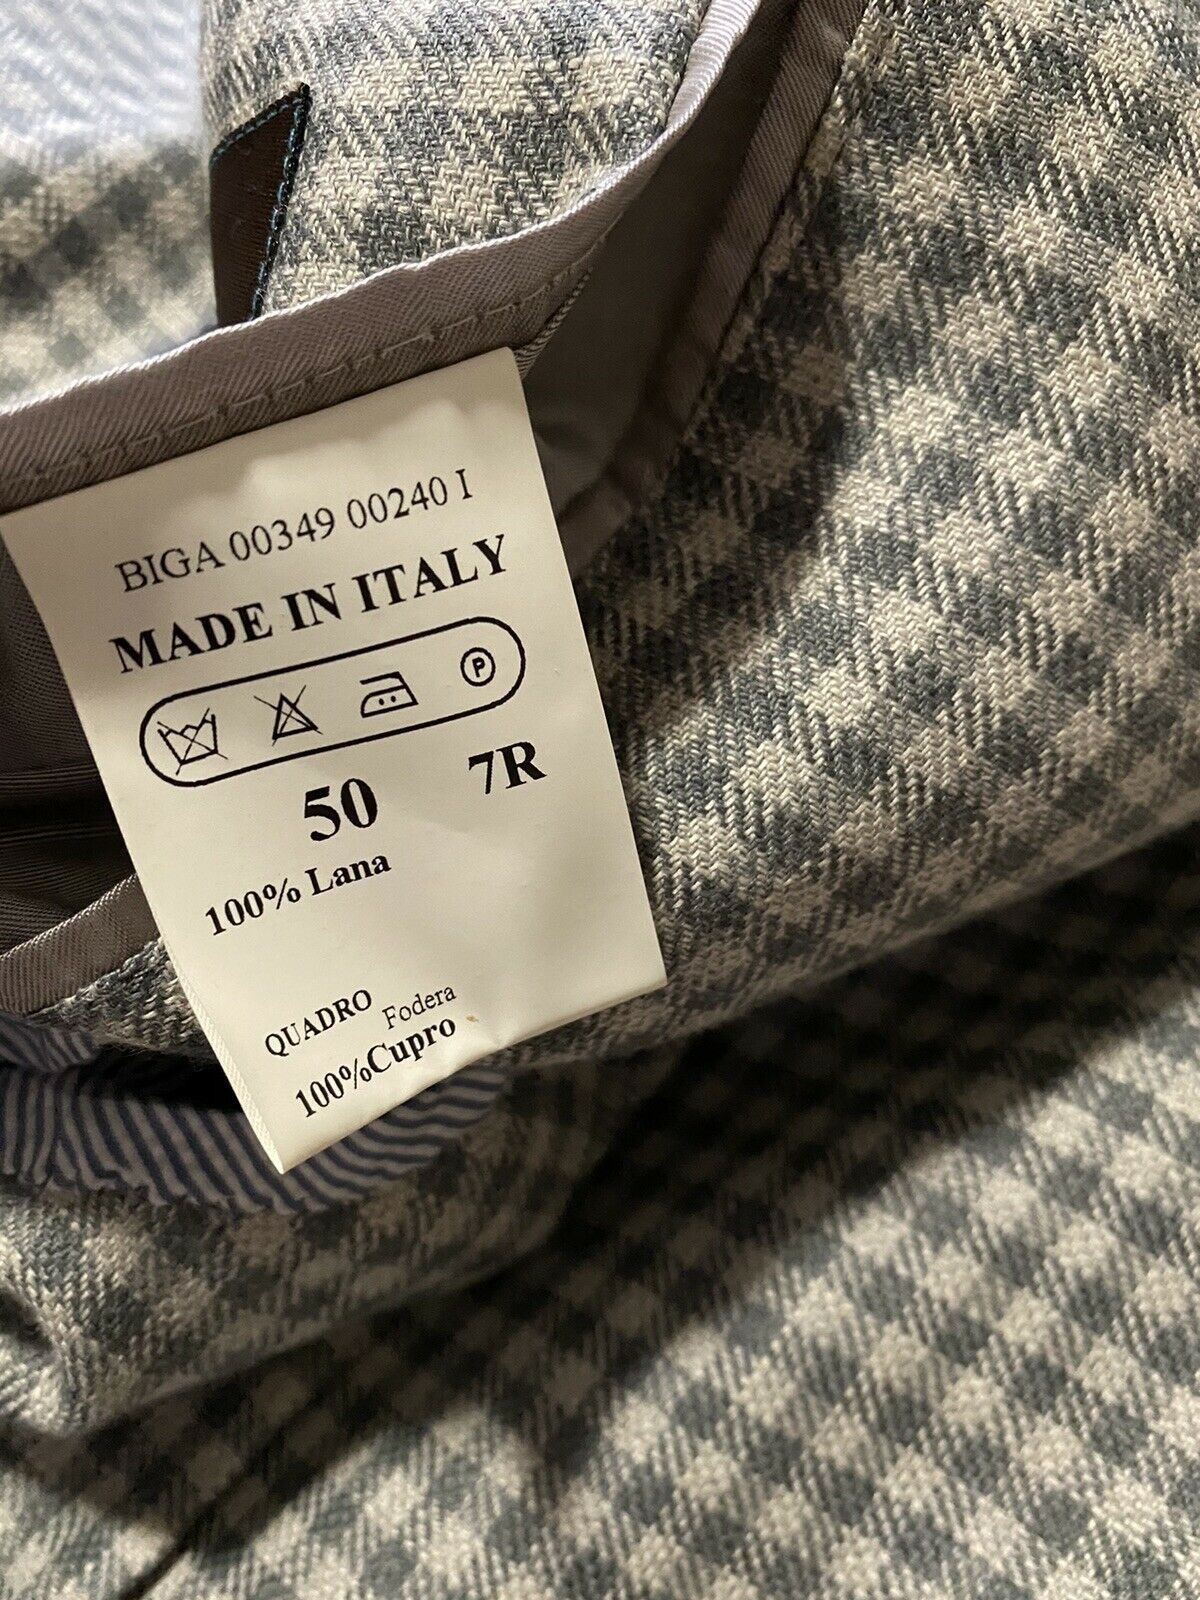 NWT $2100 Eidos Men’s Jacket Blazer  Gray Gingh 40 US ( 50 Eu ) Italy